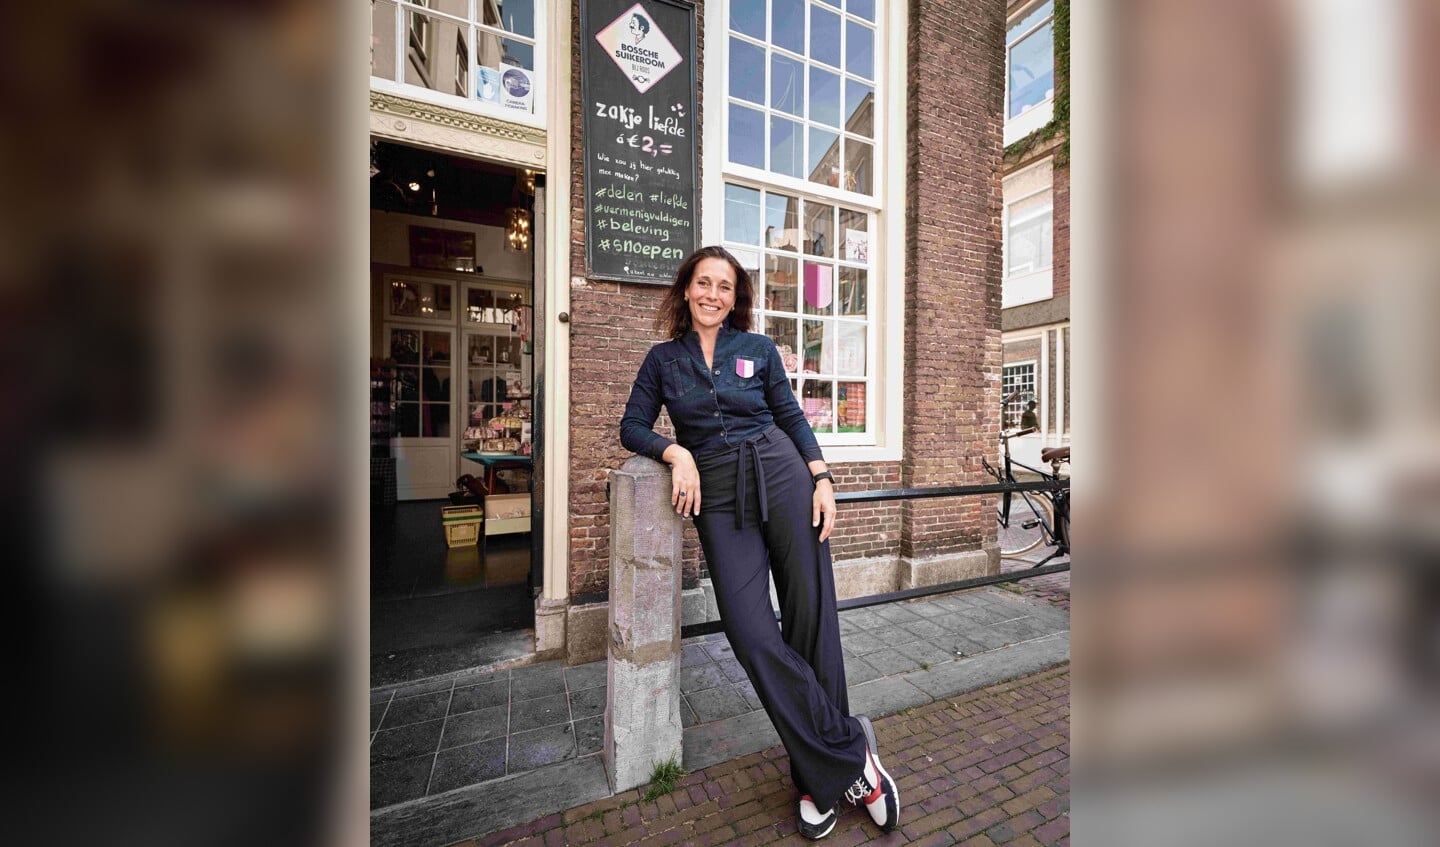 Het embleem kan  opgehaald worden in één van de 25 aangesloten winkels in de Bossche binnenstad. Een van die uitgiftepunten is Bossche Suikeroom van Roos van der Miessen (foto).